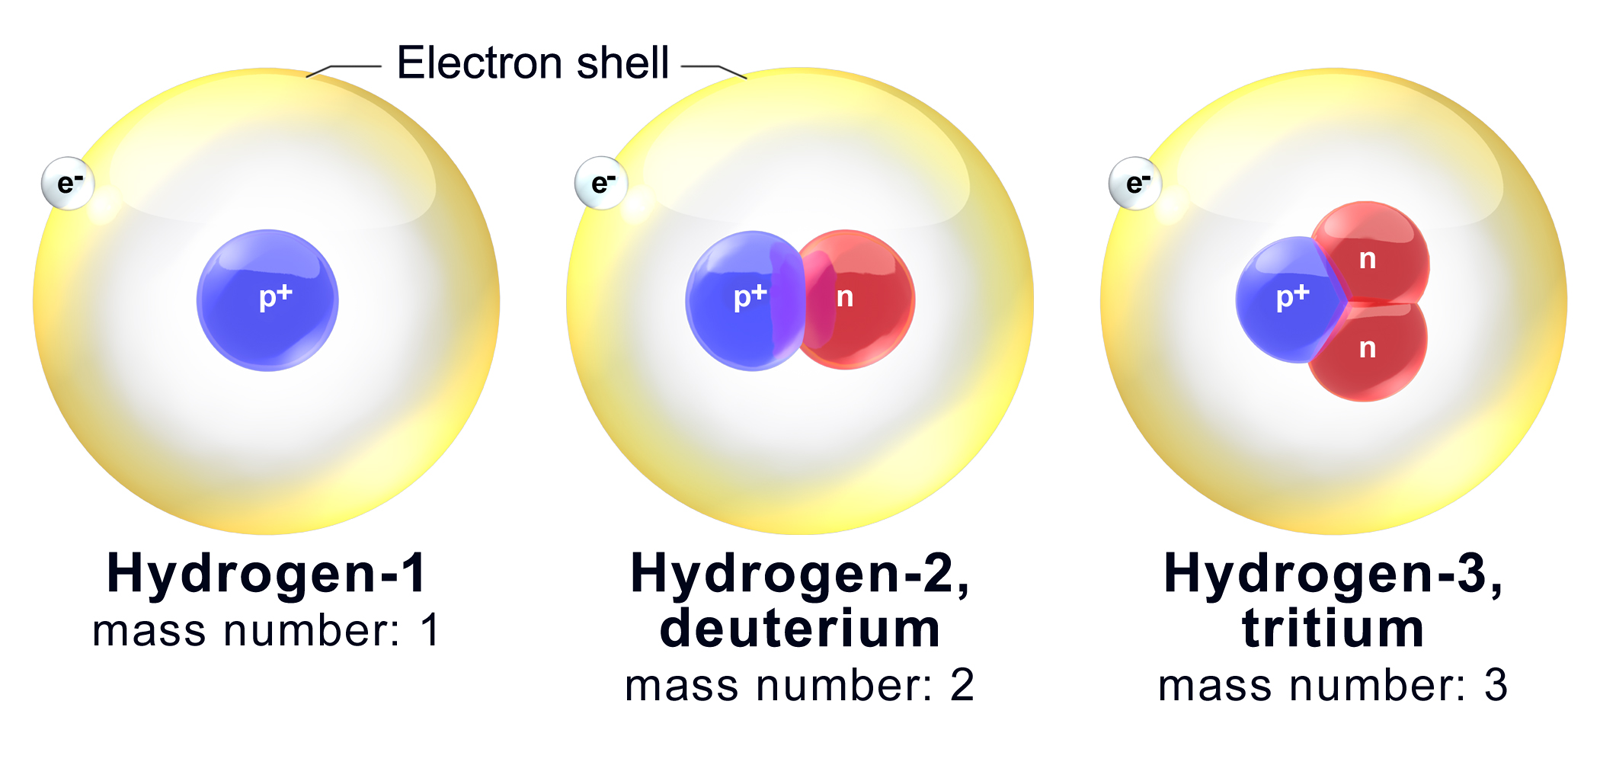 النظائر هي ذرات العنصر نفسه ولها عدد البروتونات نفسه